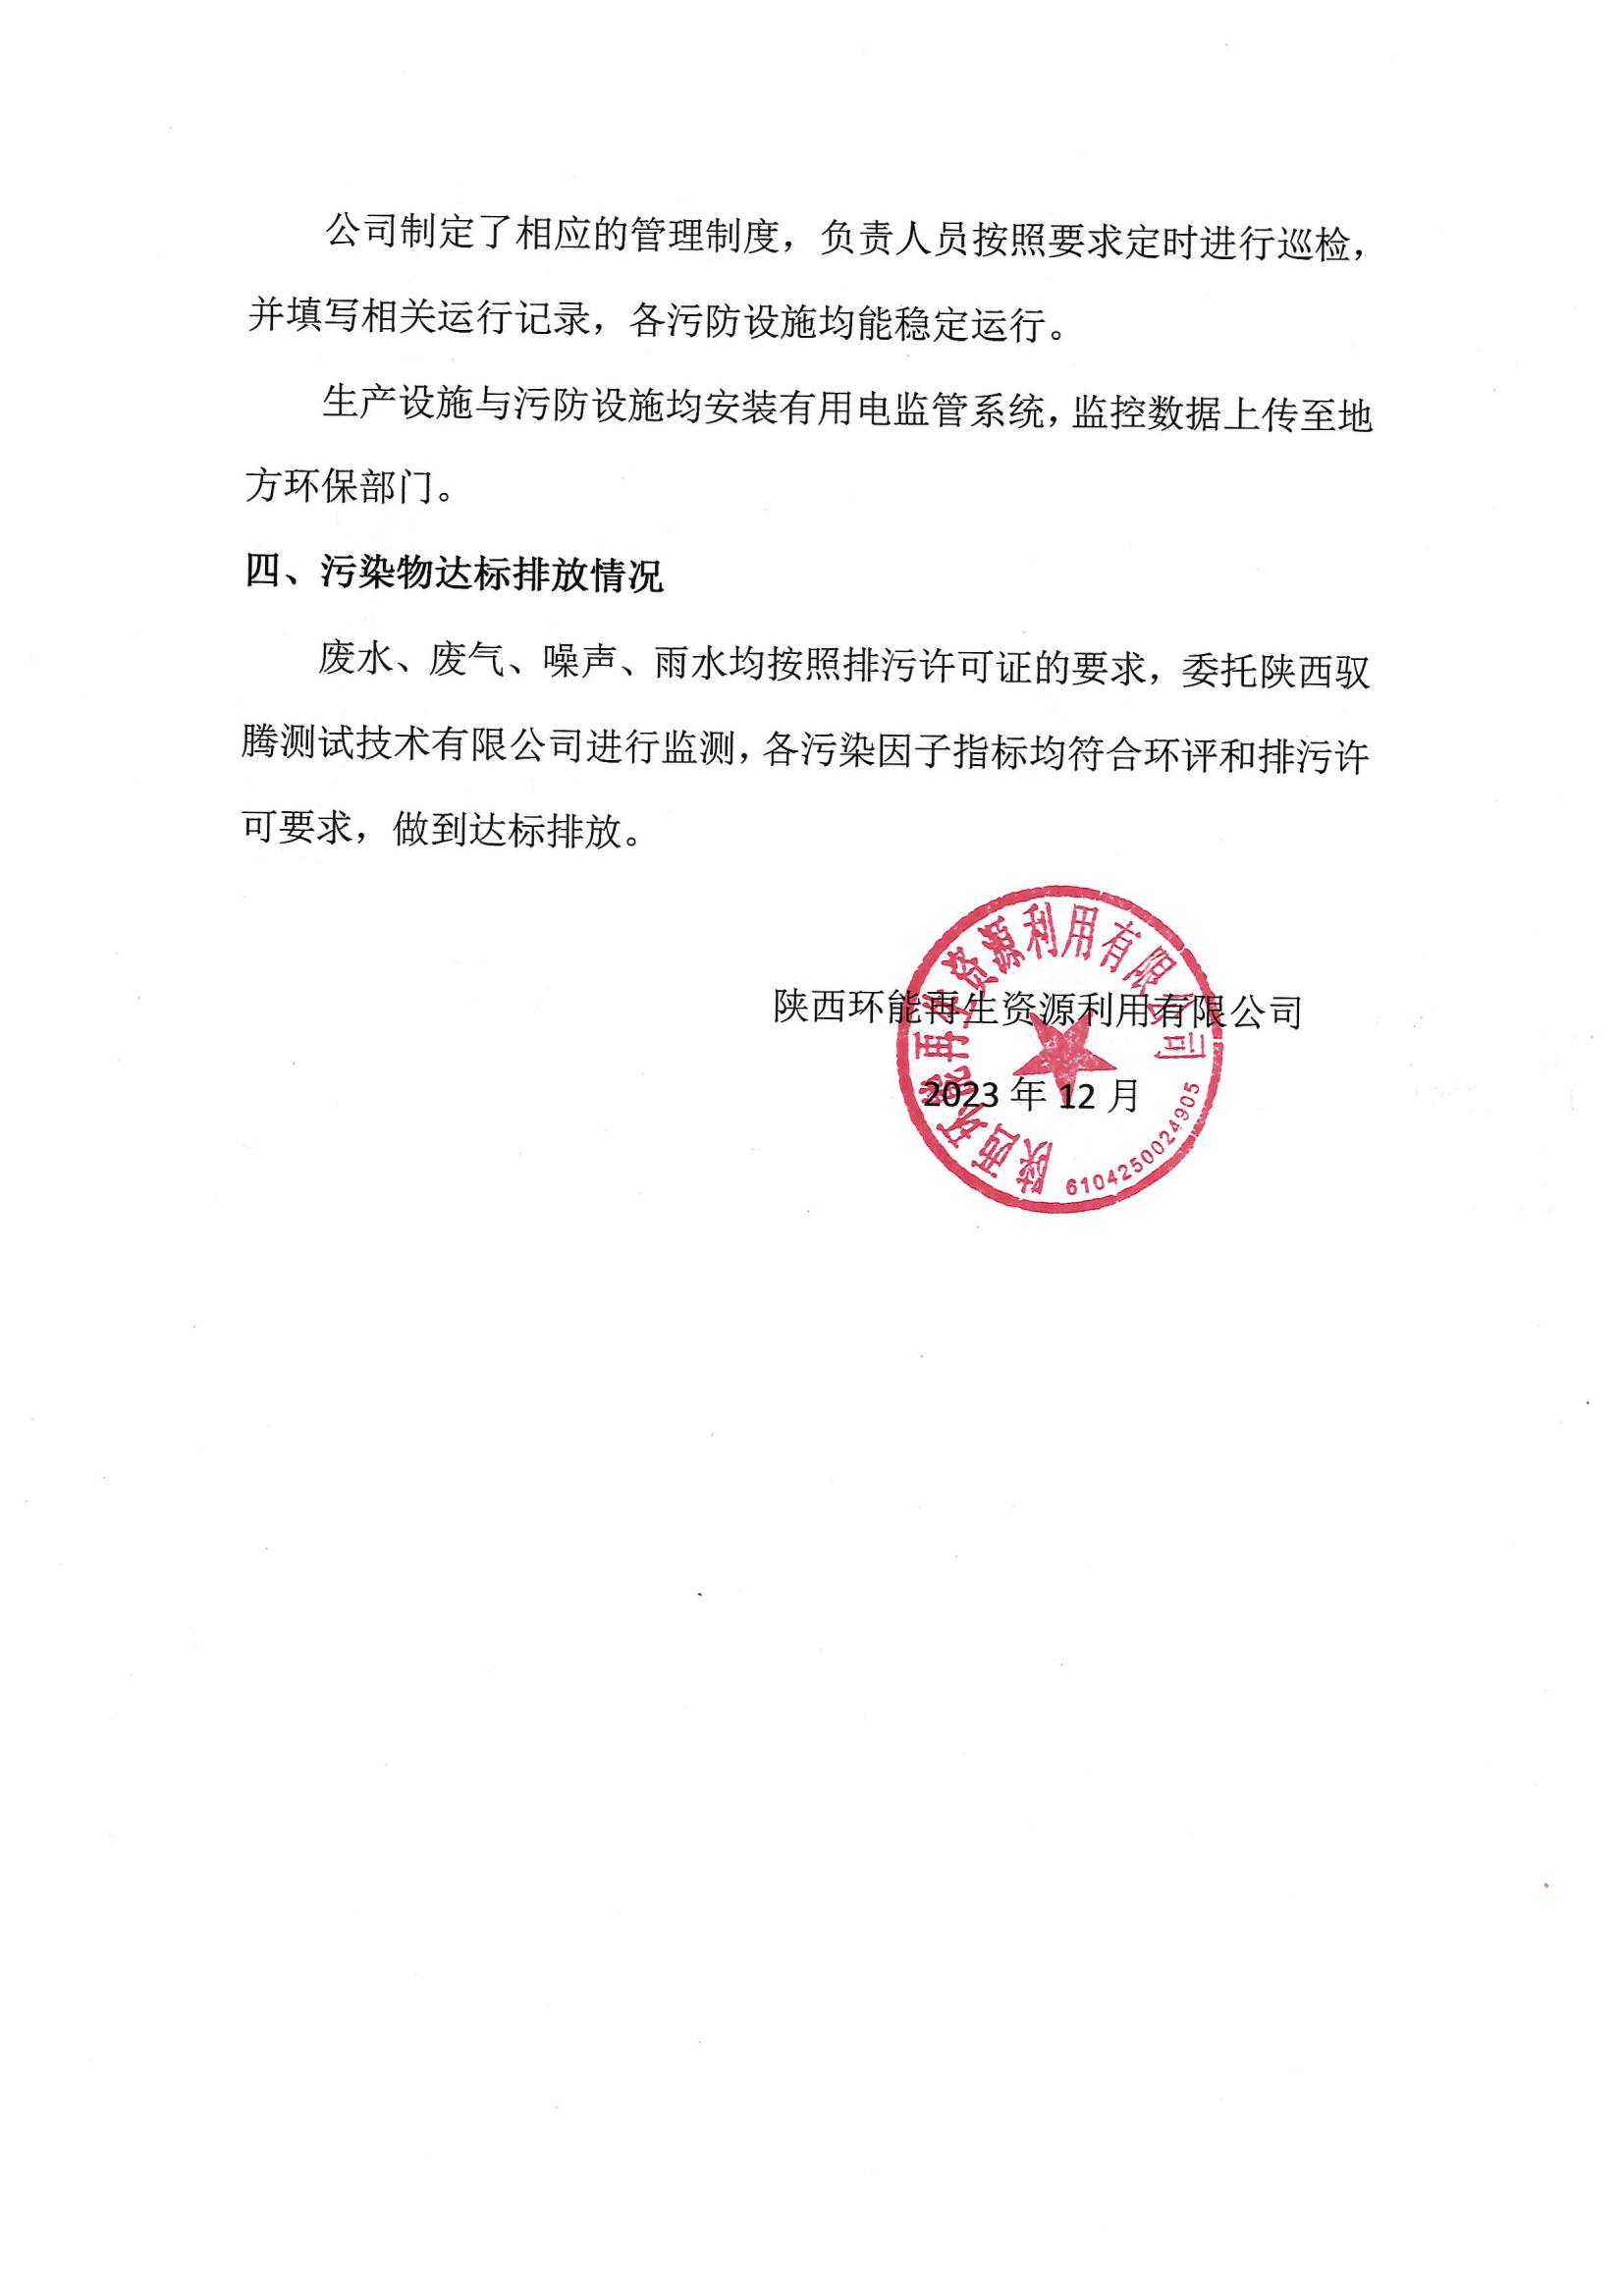 陕西环能再生资源利用有限公司环保信息公示（2023年1-11月）(1)_01.jpg